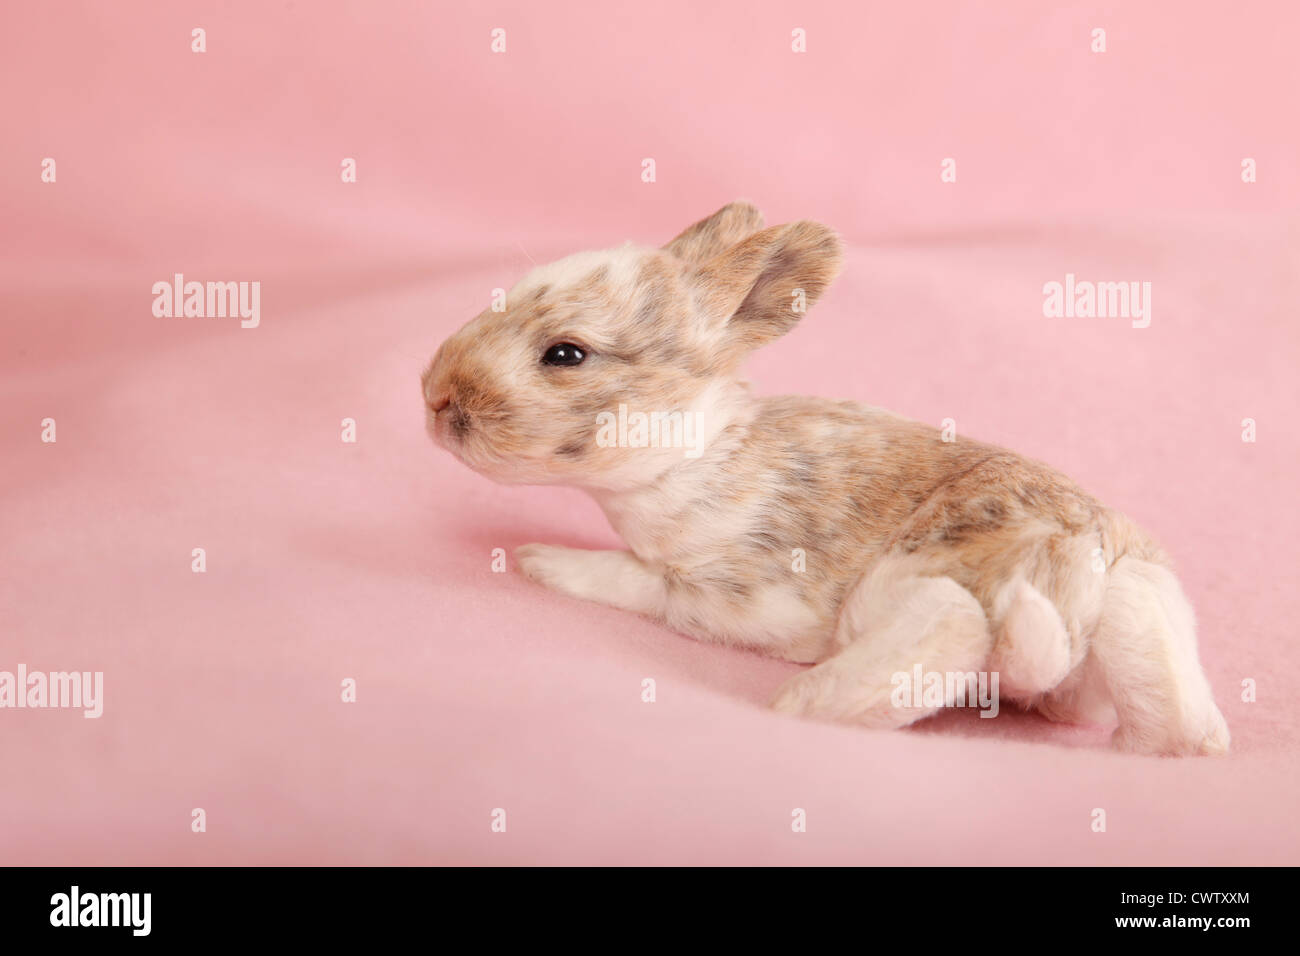 Kleinrex / Rex Bunny Stockfoto